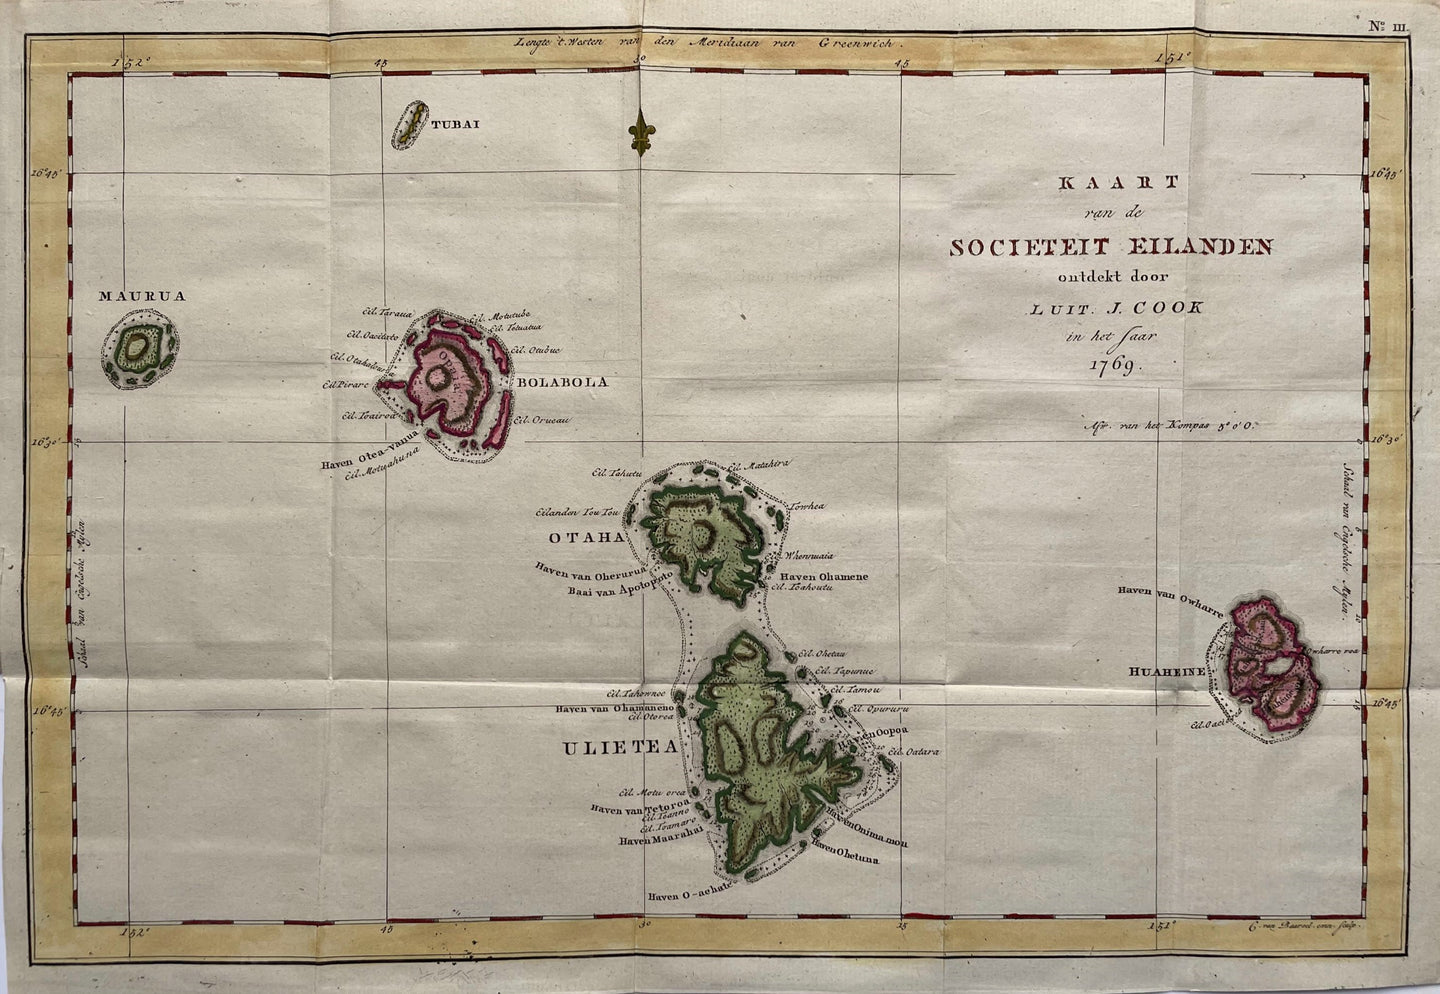 Pacific Polynesia Society Islands - J Cook - circa 1797